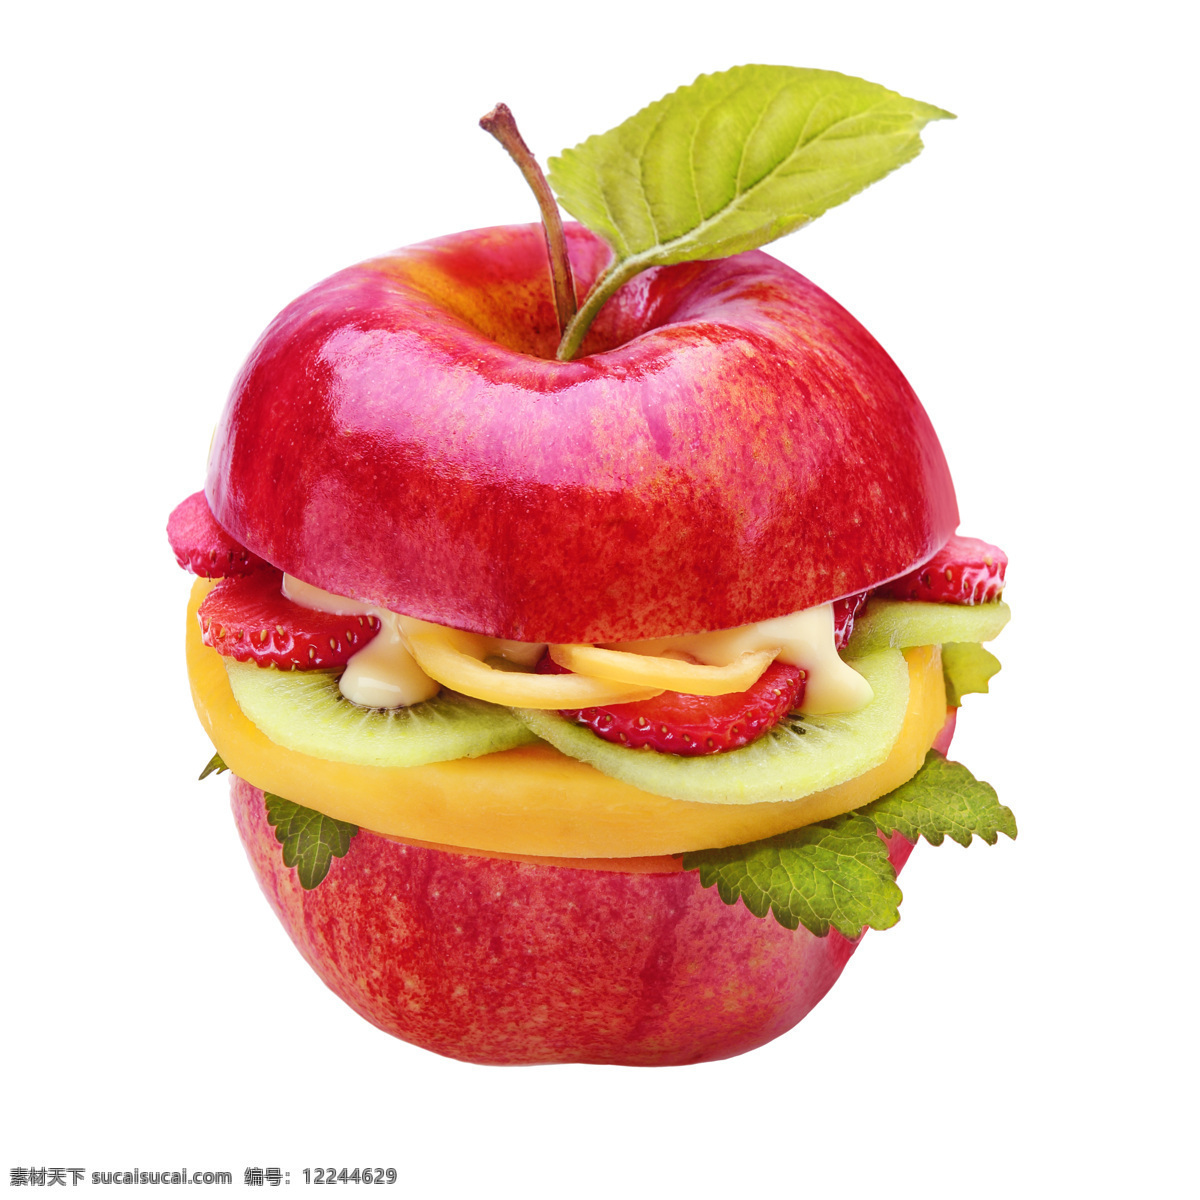 苹果 中间 水果 草莓 猕猴桃 食物 美食 苹果图片 餐饮美食